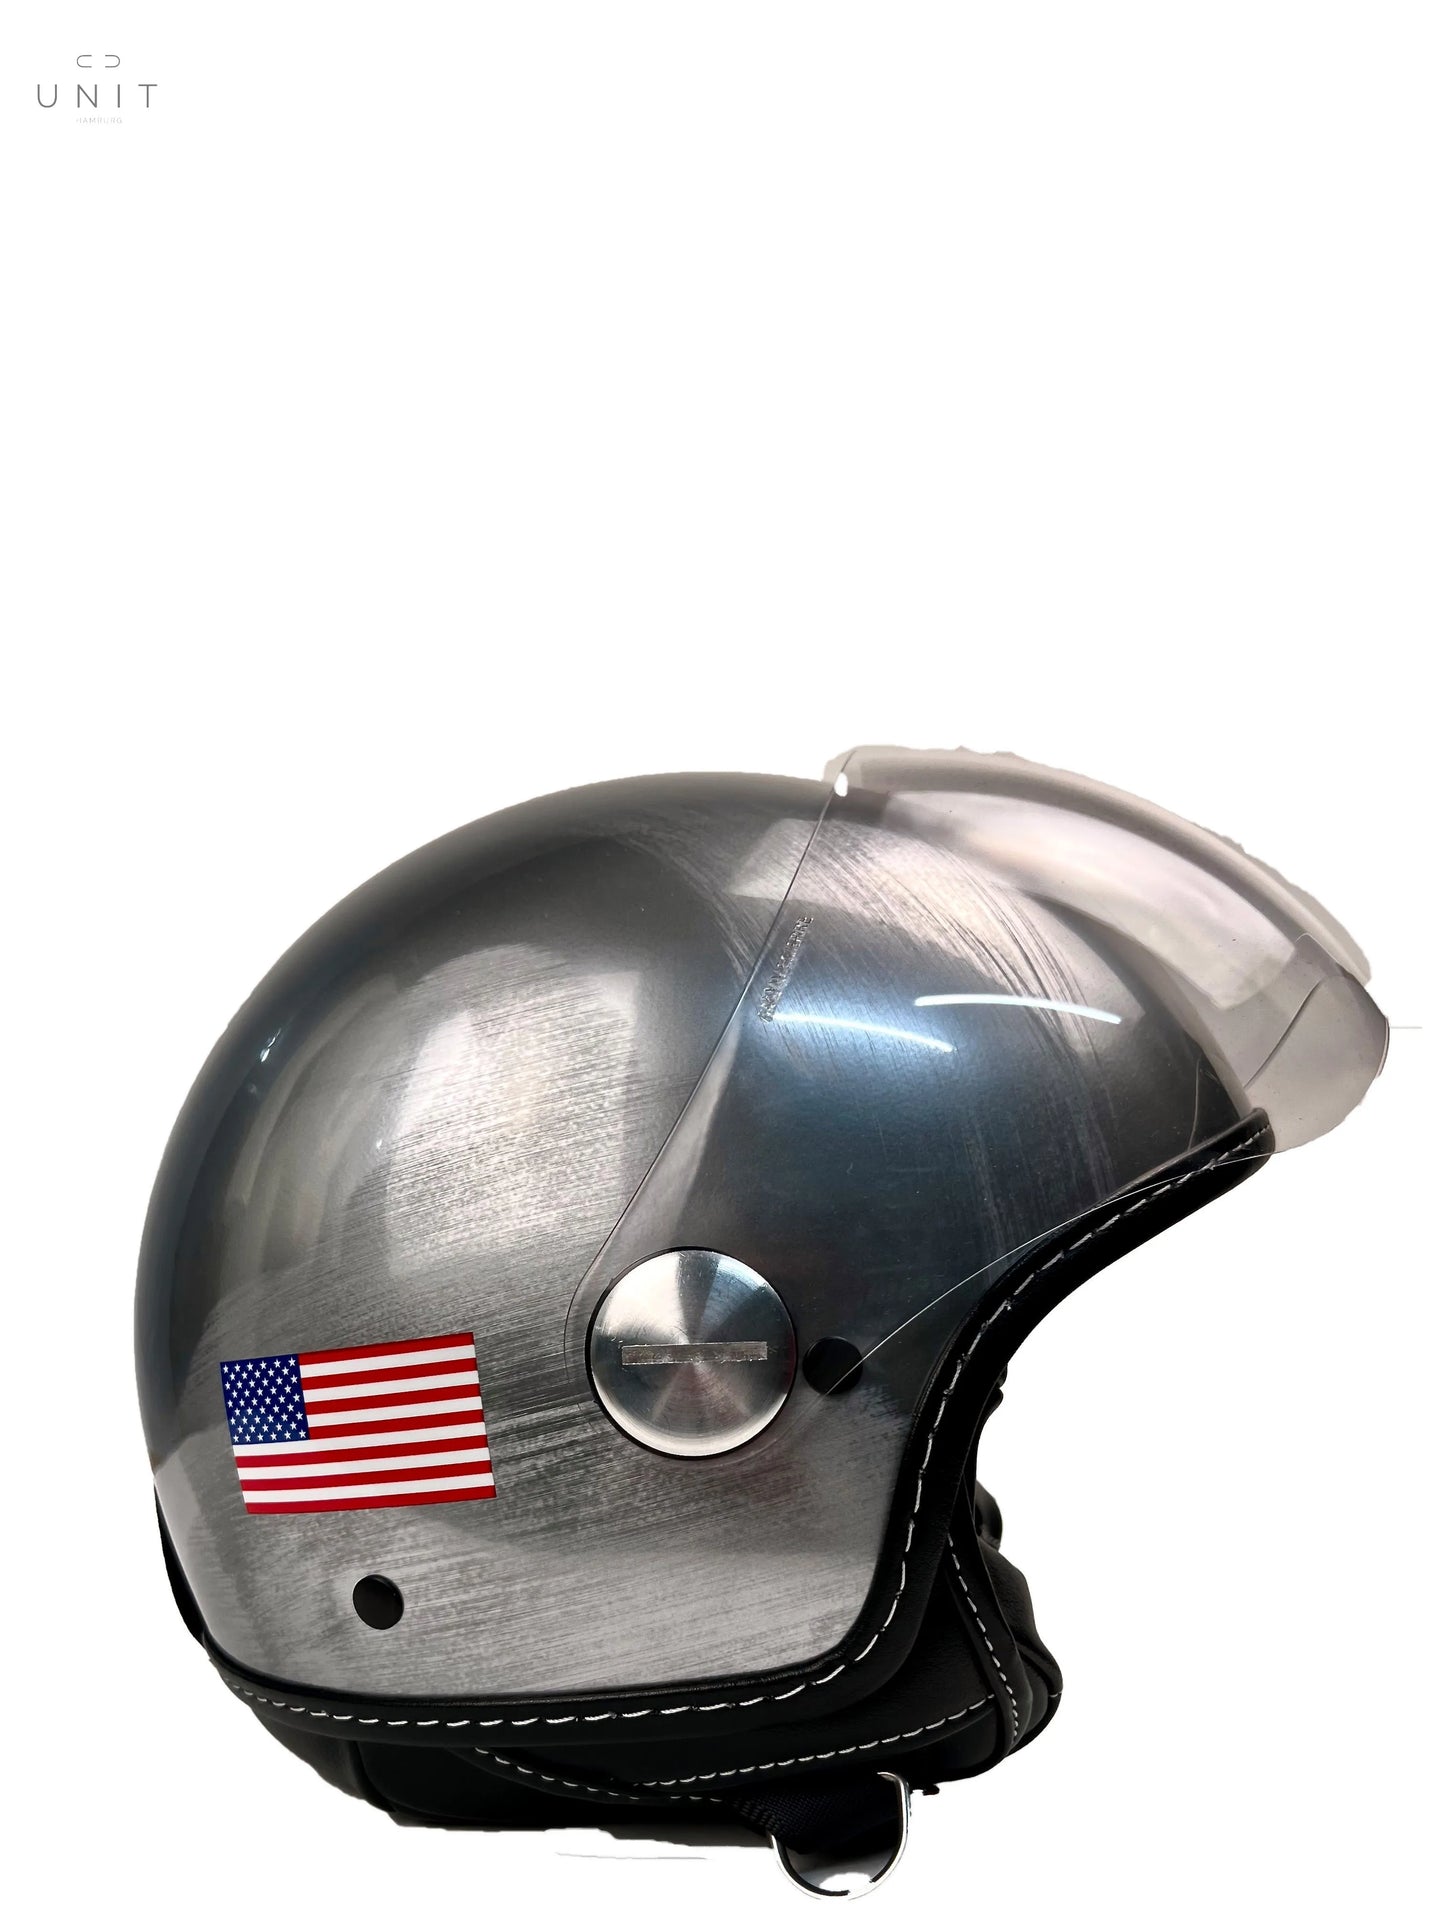 GULF Helm, Unikat, Einzelanfertigung US-Flag, Jethelm silber/schwarz GULF